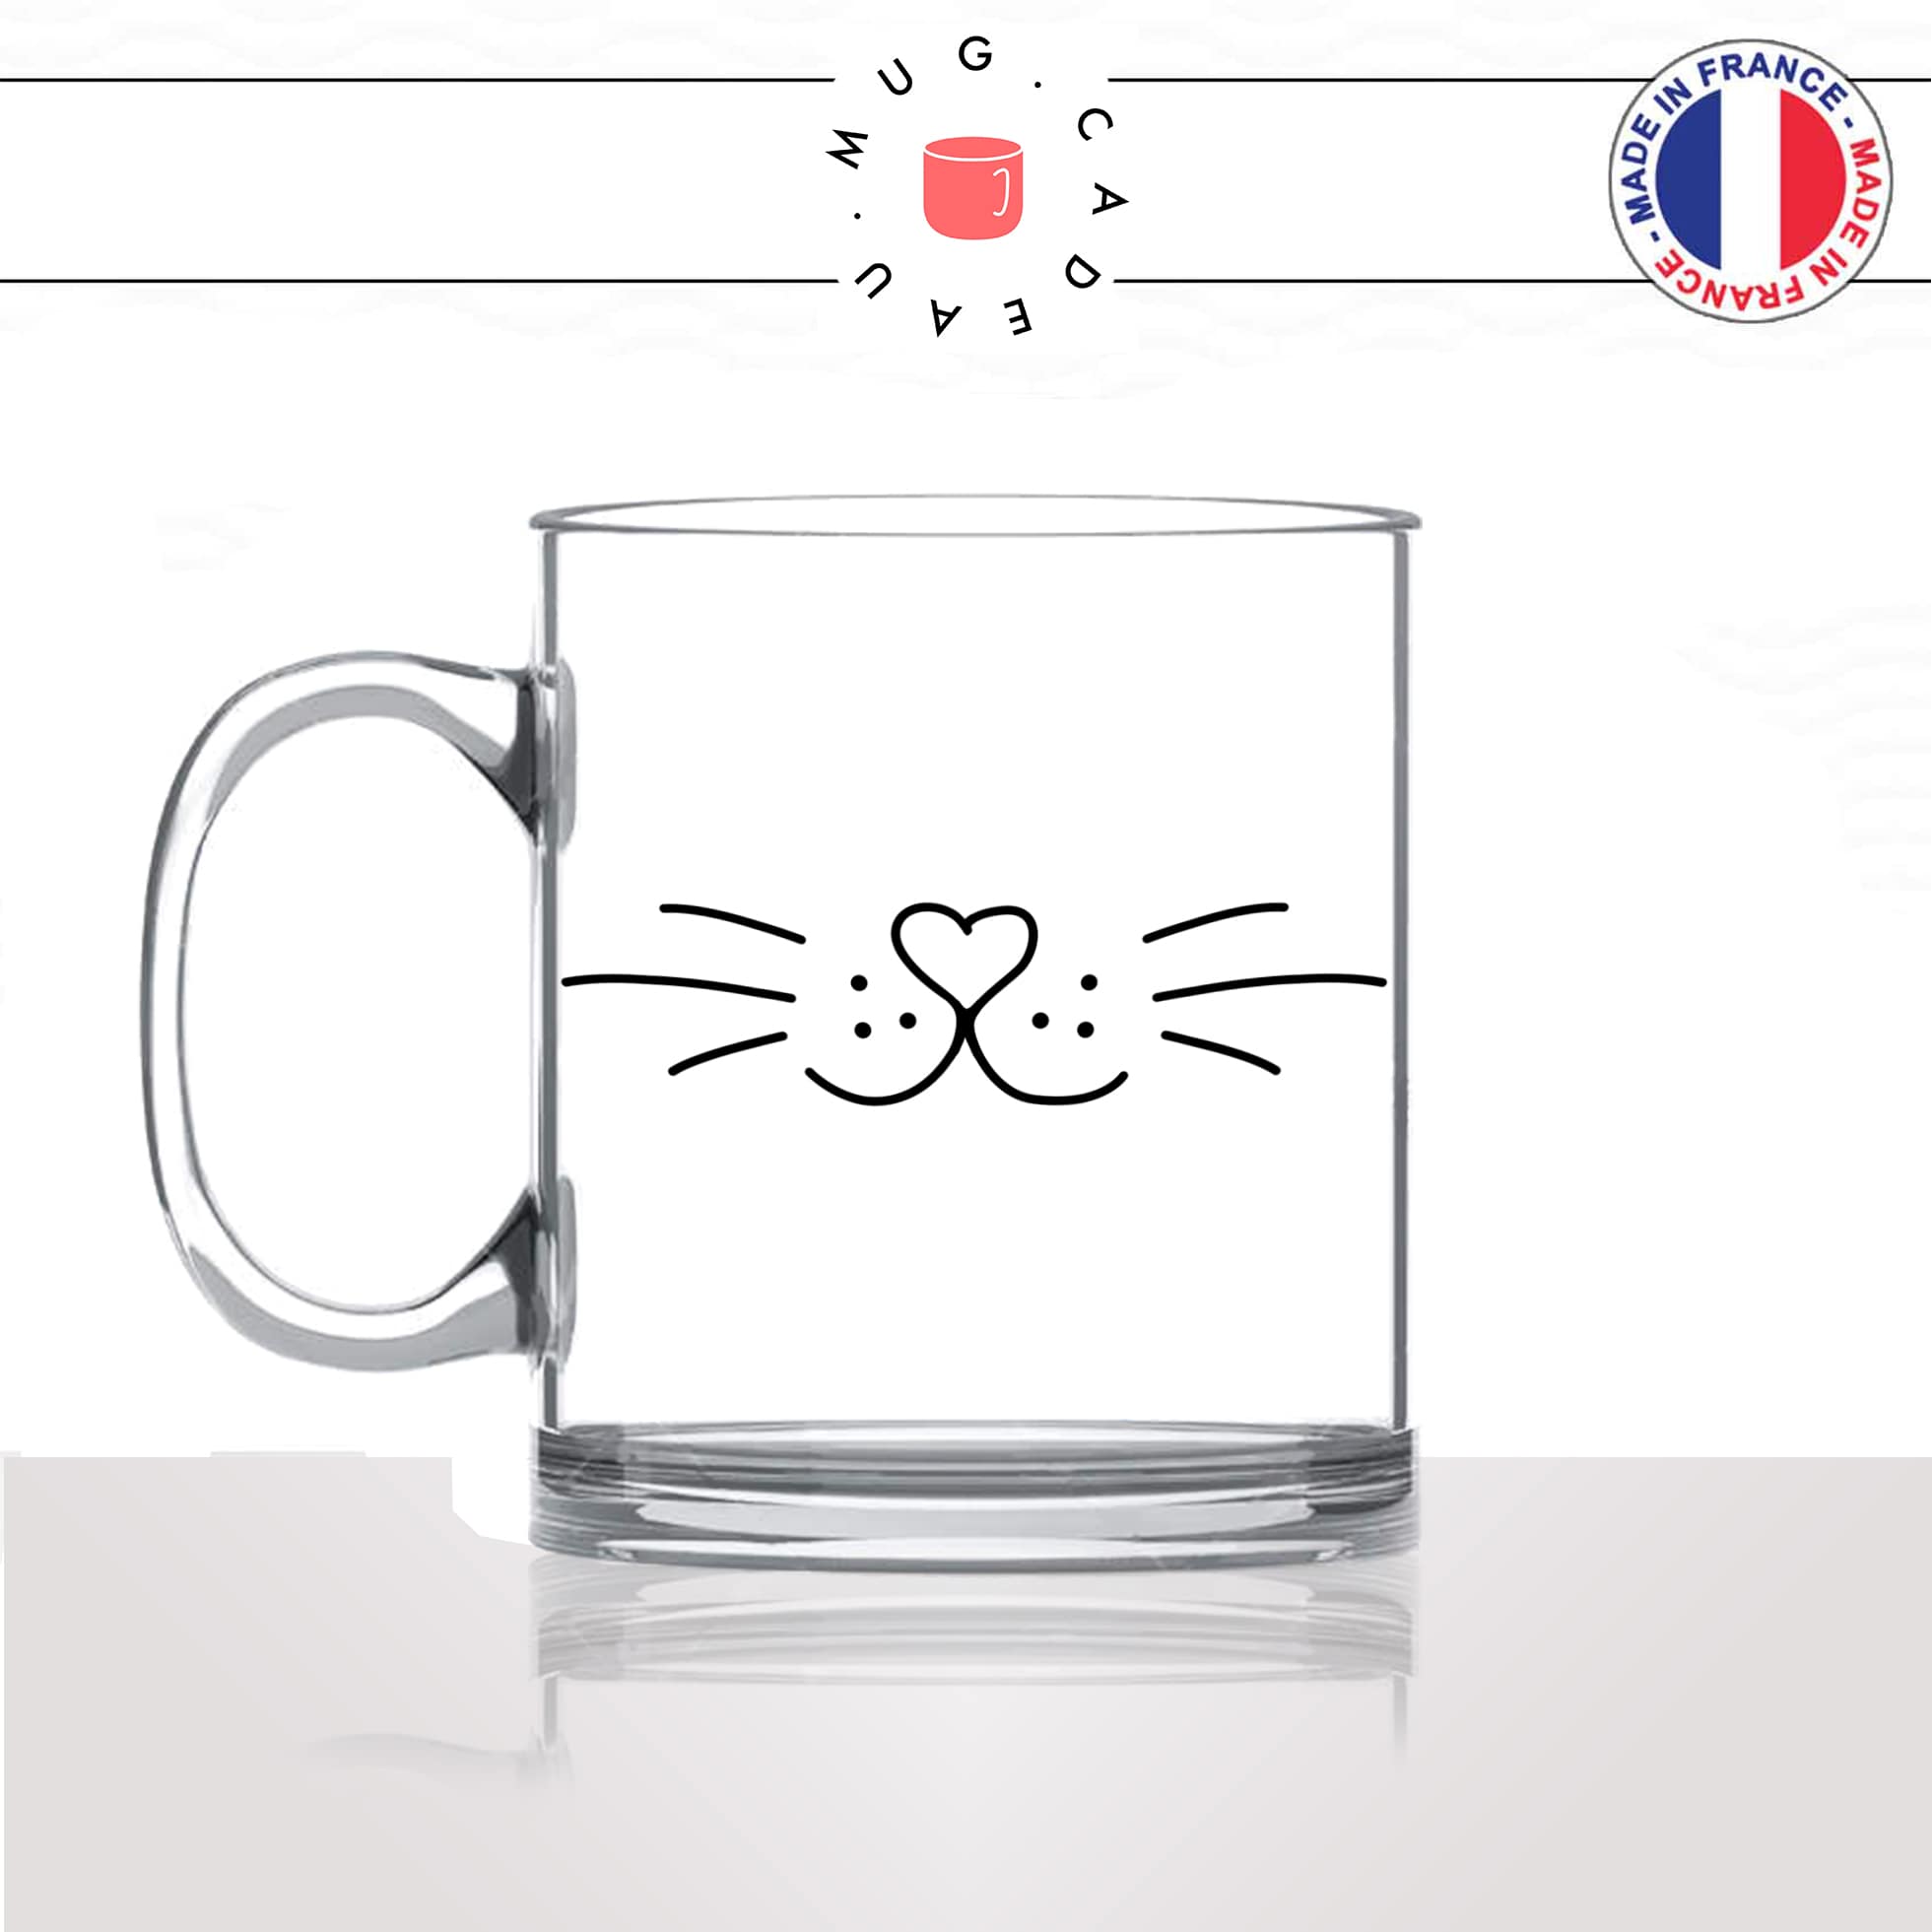 mug-tasse-en-verre-transparent-moustache-truffe-chats-animal-chaton-dessin-noir-fun-café-thé-idée-cadeau-original-personnalisé-min